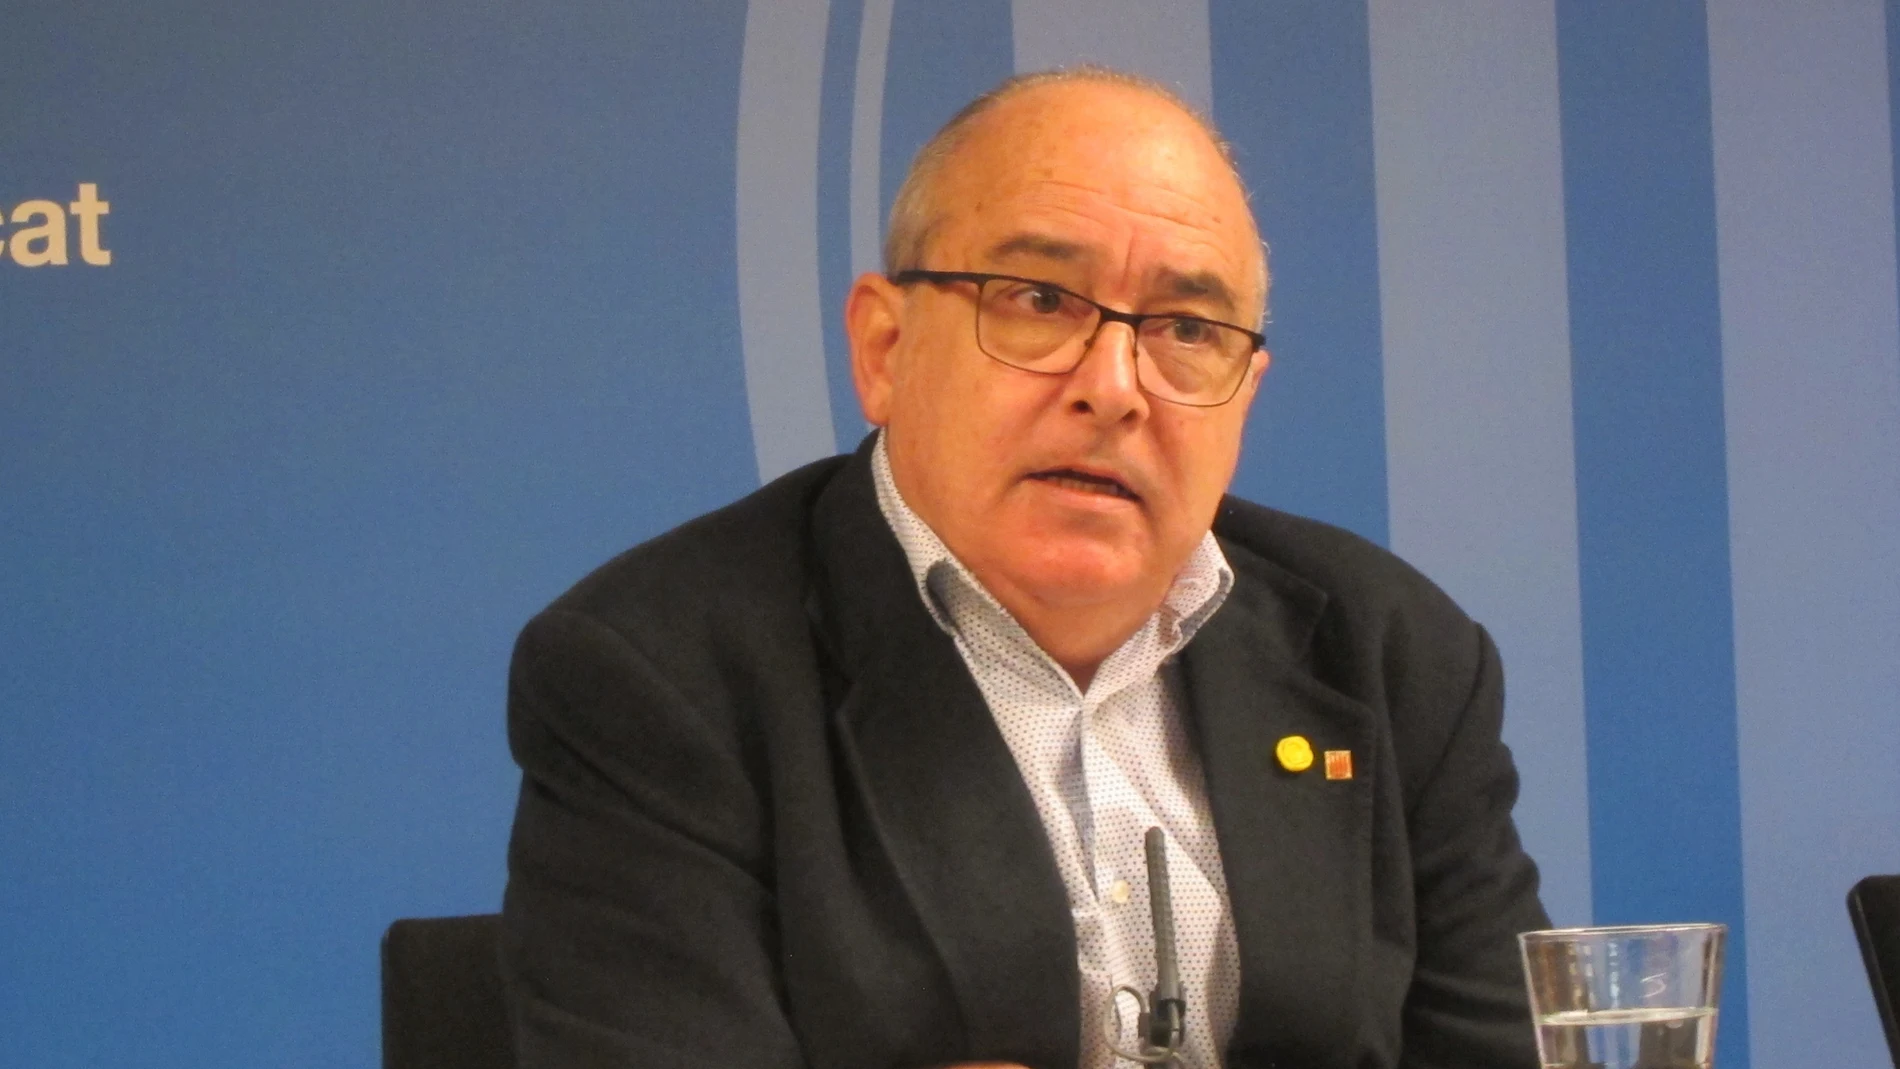 Bargalló pide al nuevo Gobierno "revertir la recentralización" educativa impulsada por Wert